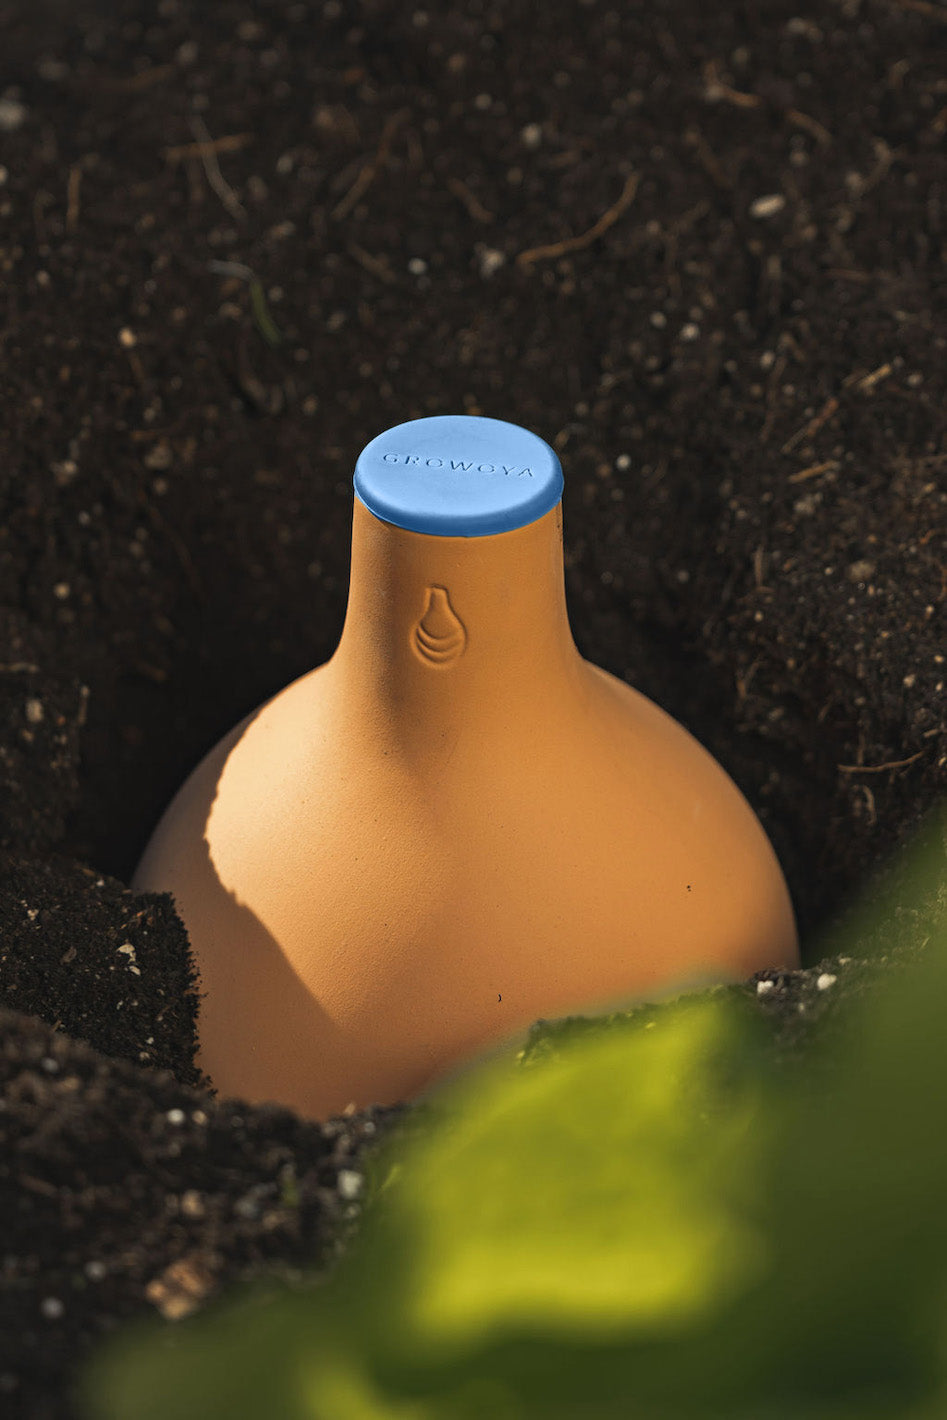 A buried Oya Watering pot in a garden